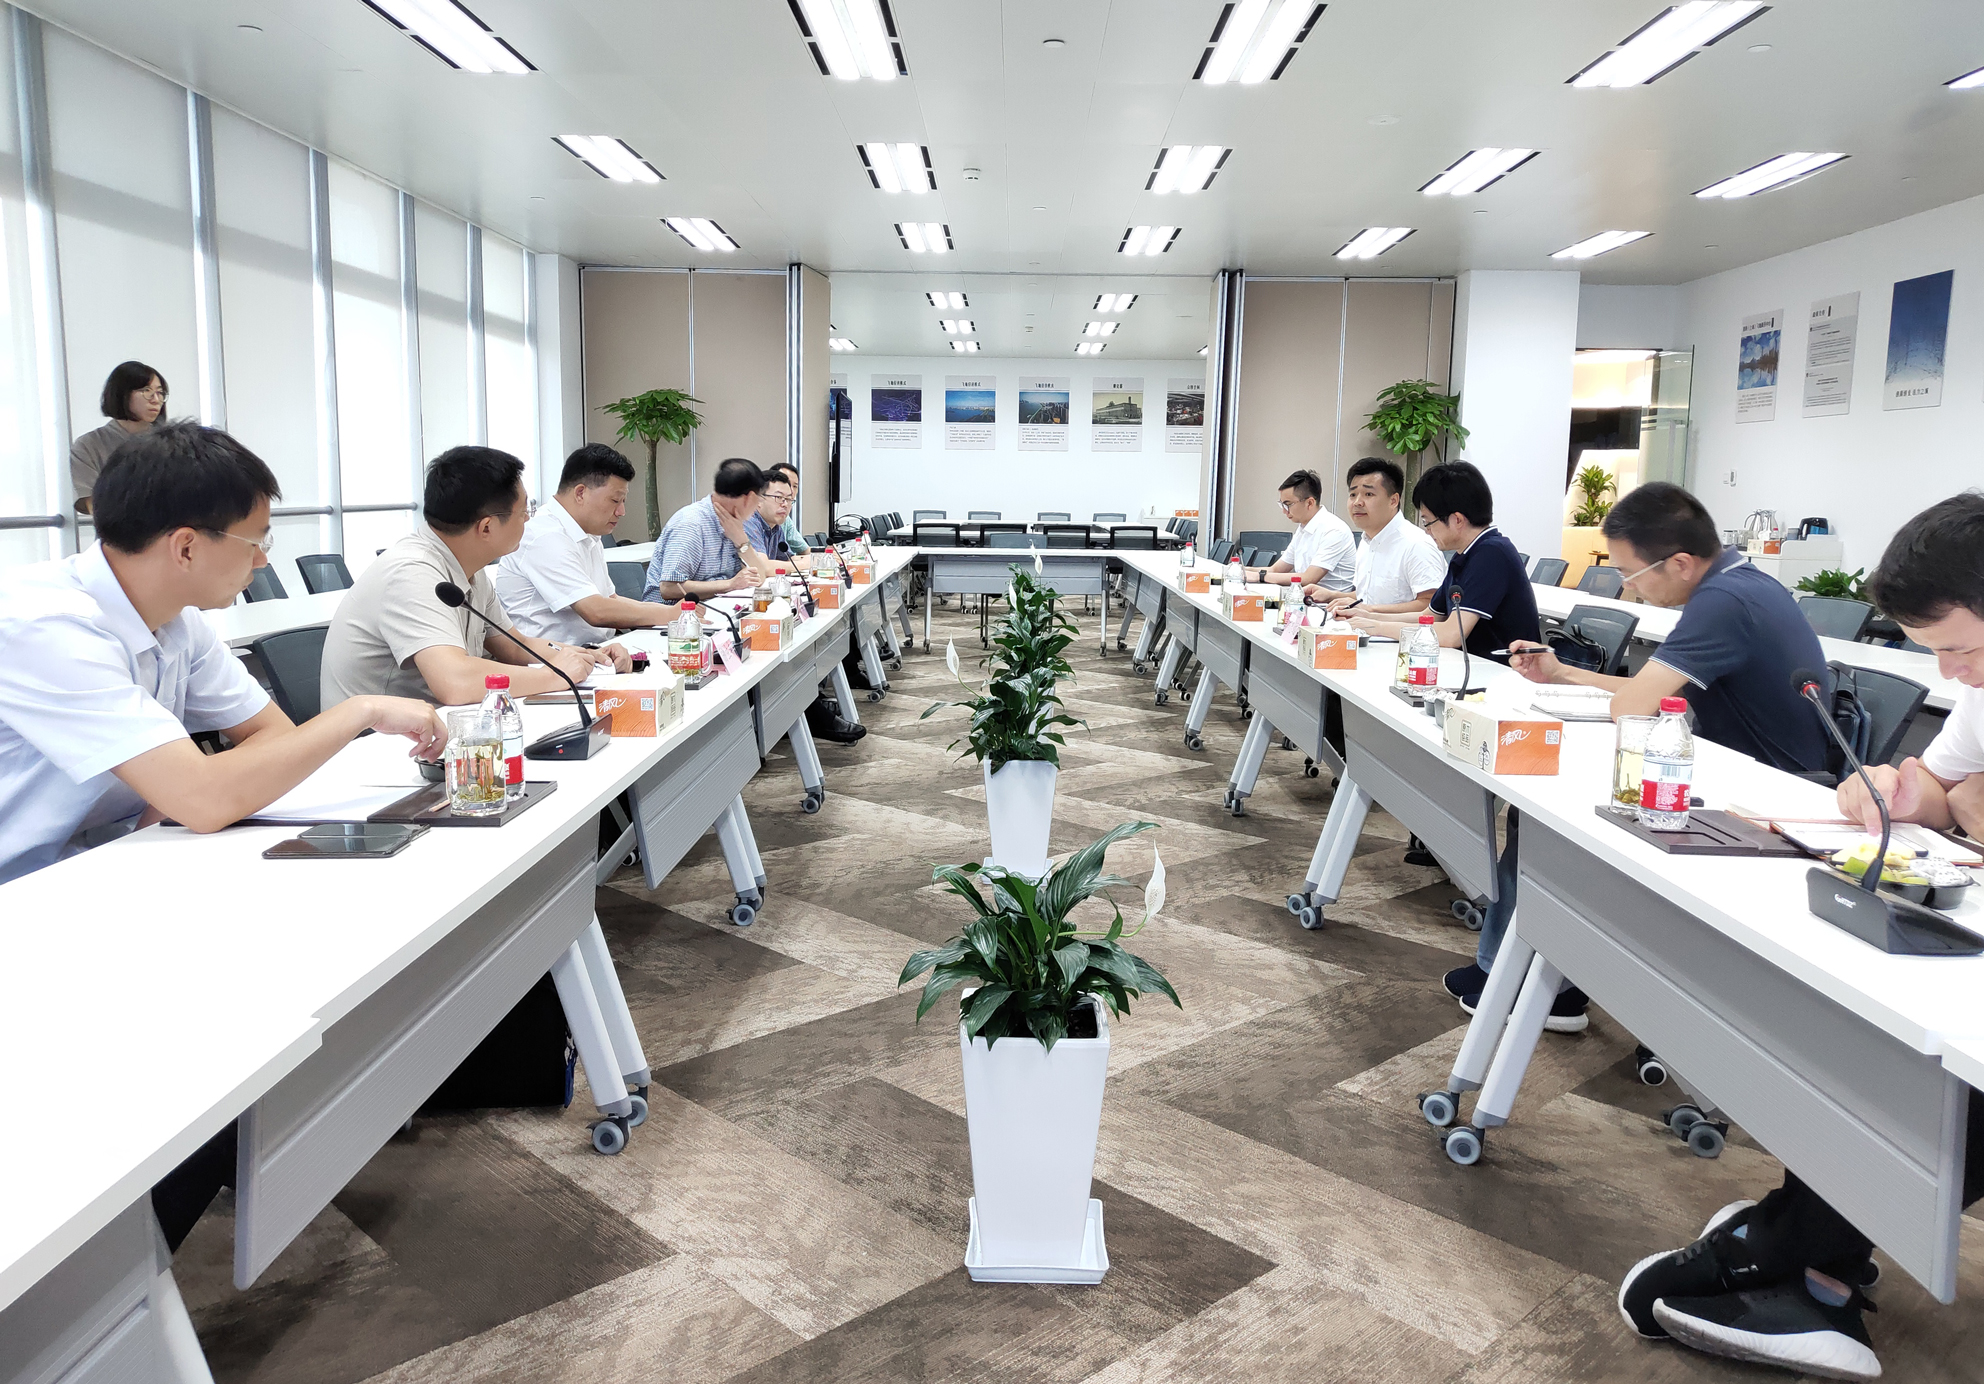 可能是上海最佳的中大型会议室选择